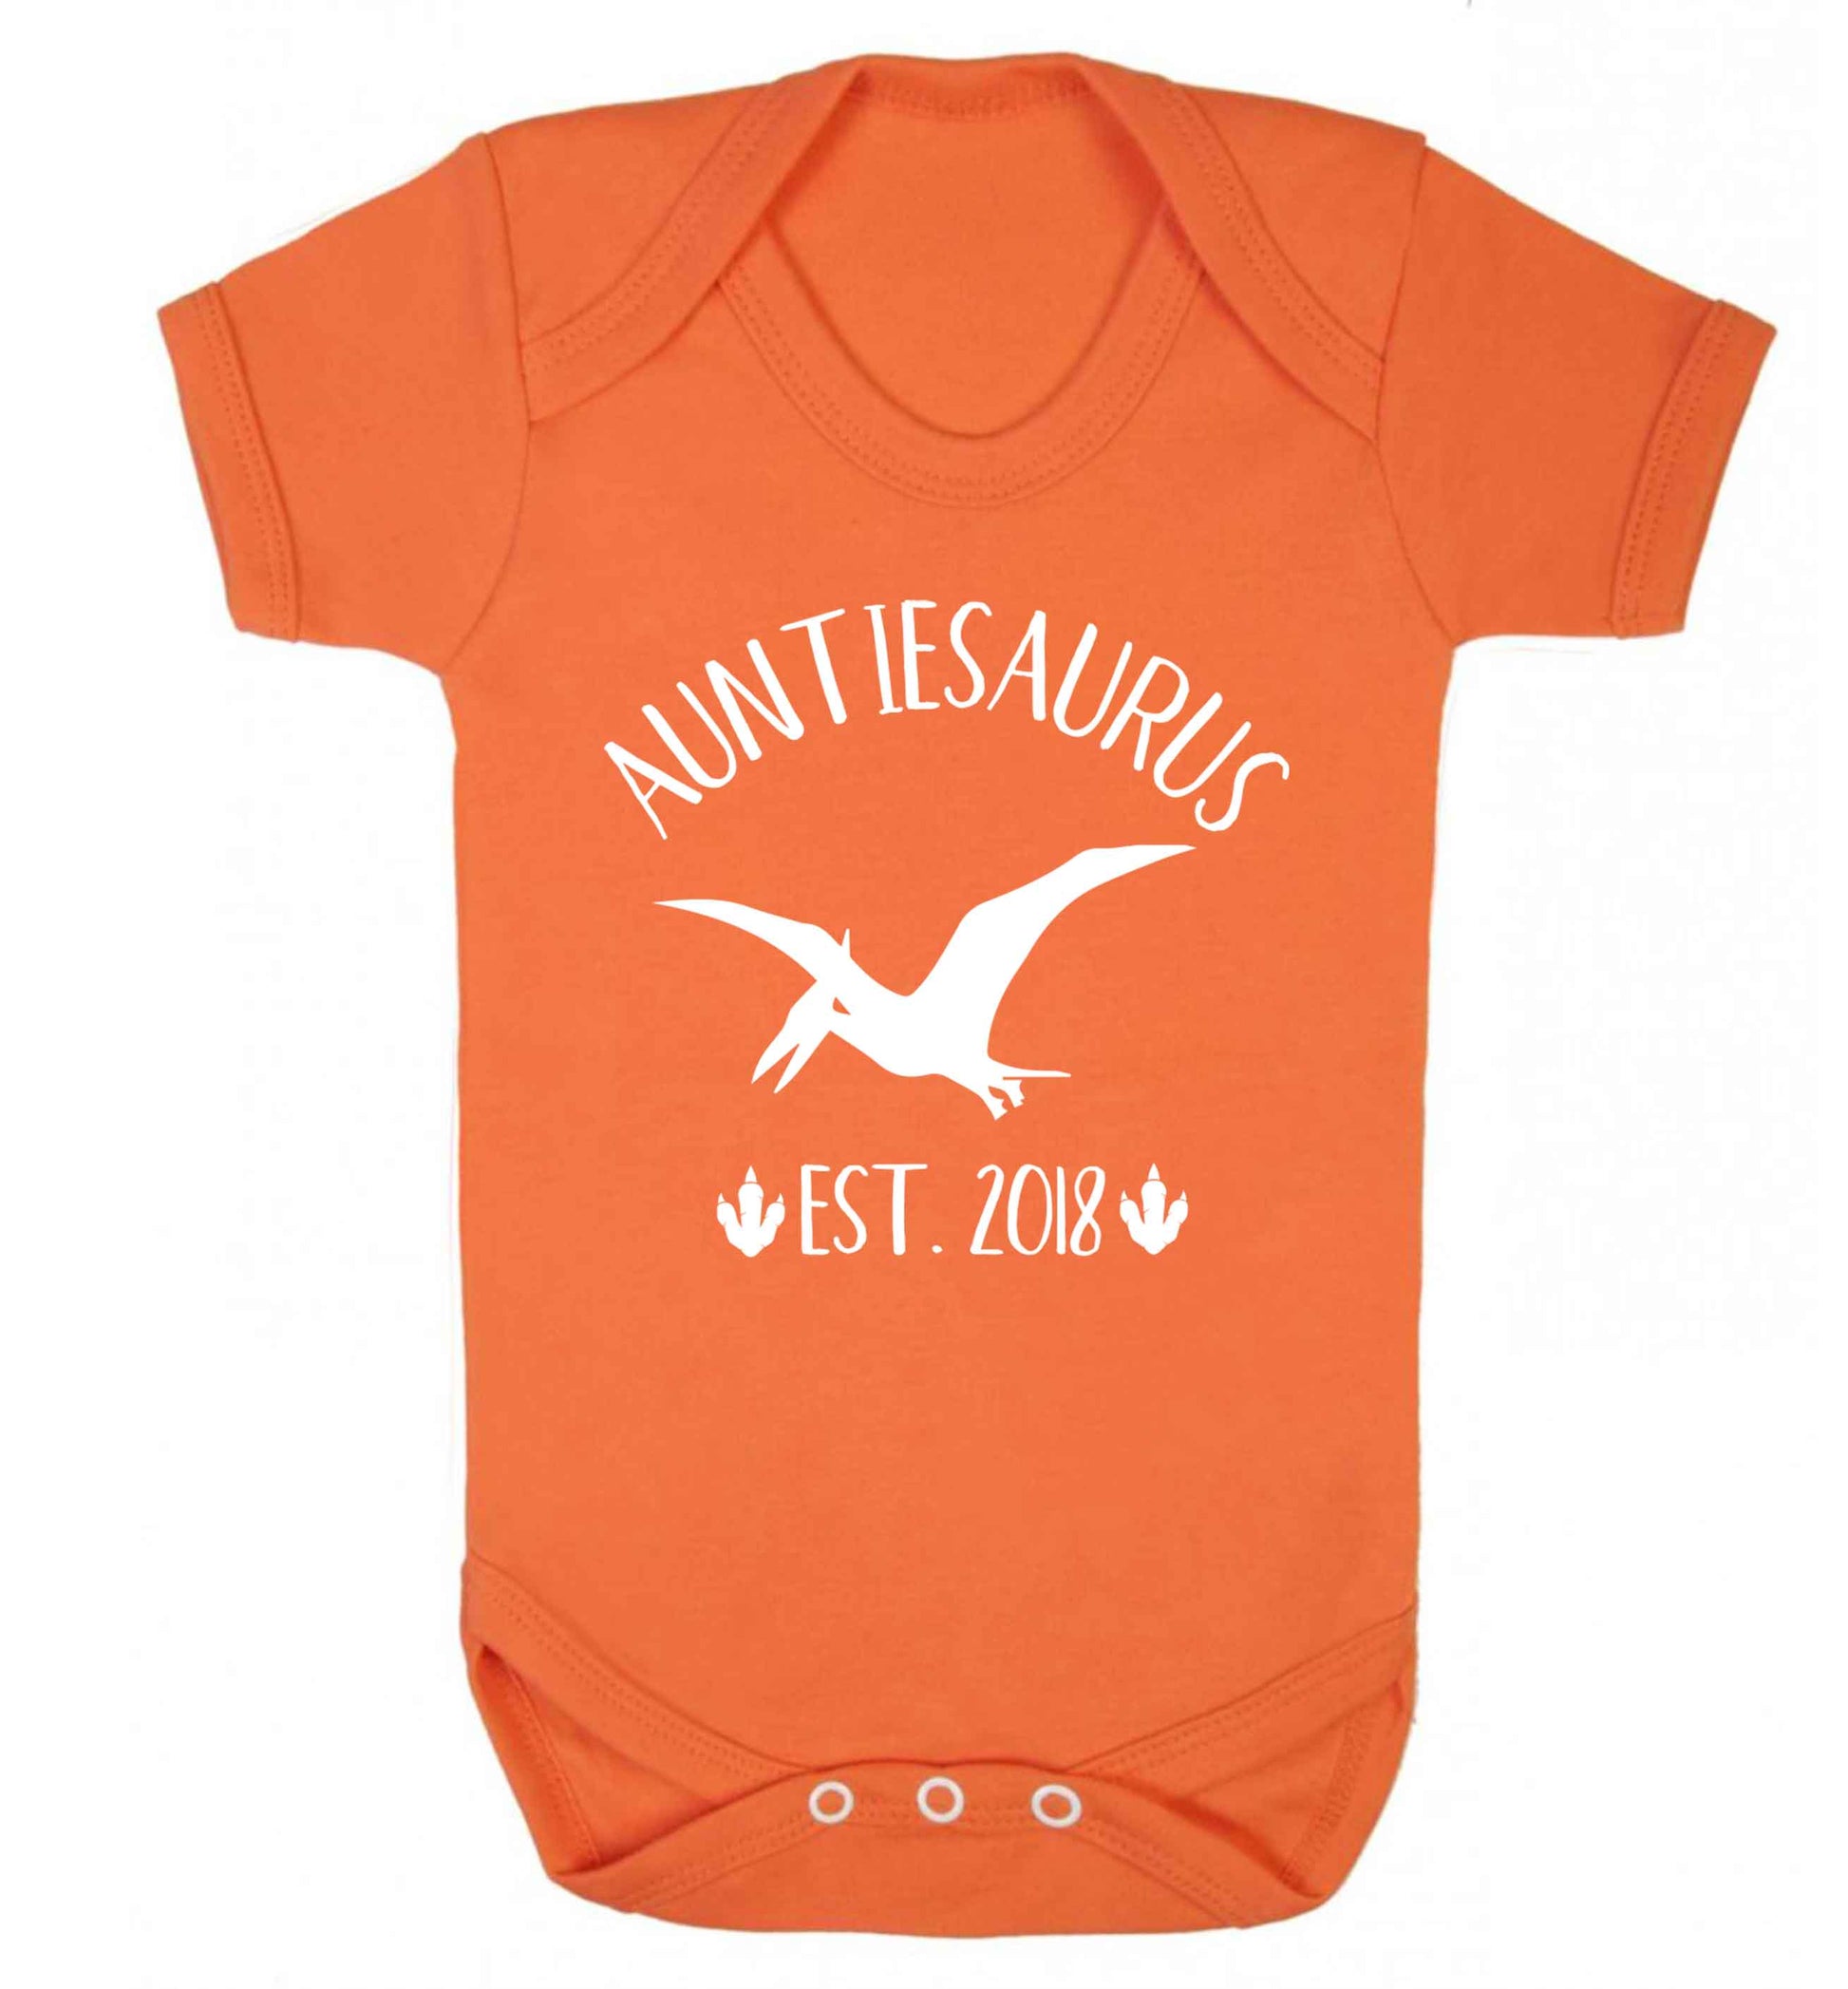 Personalised auntiesaurus since (custom date) Baby Vest orange 18-24 months